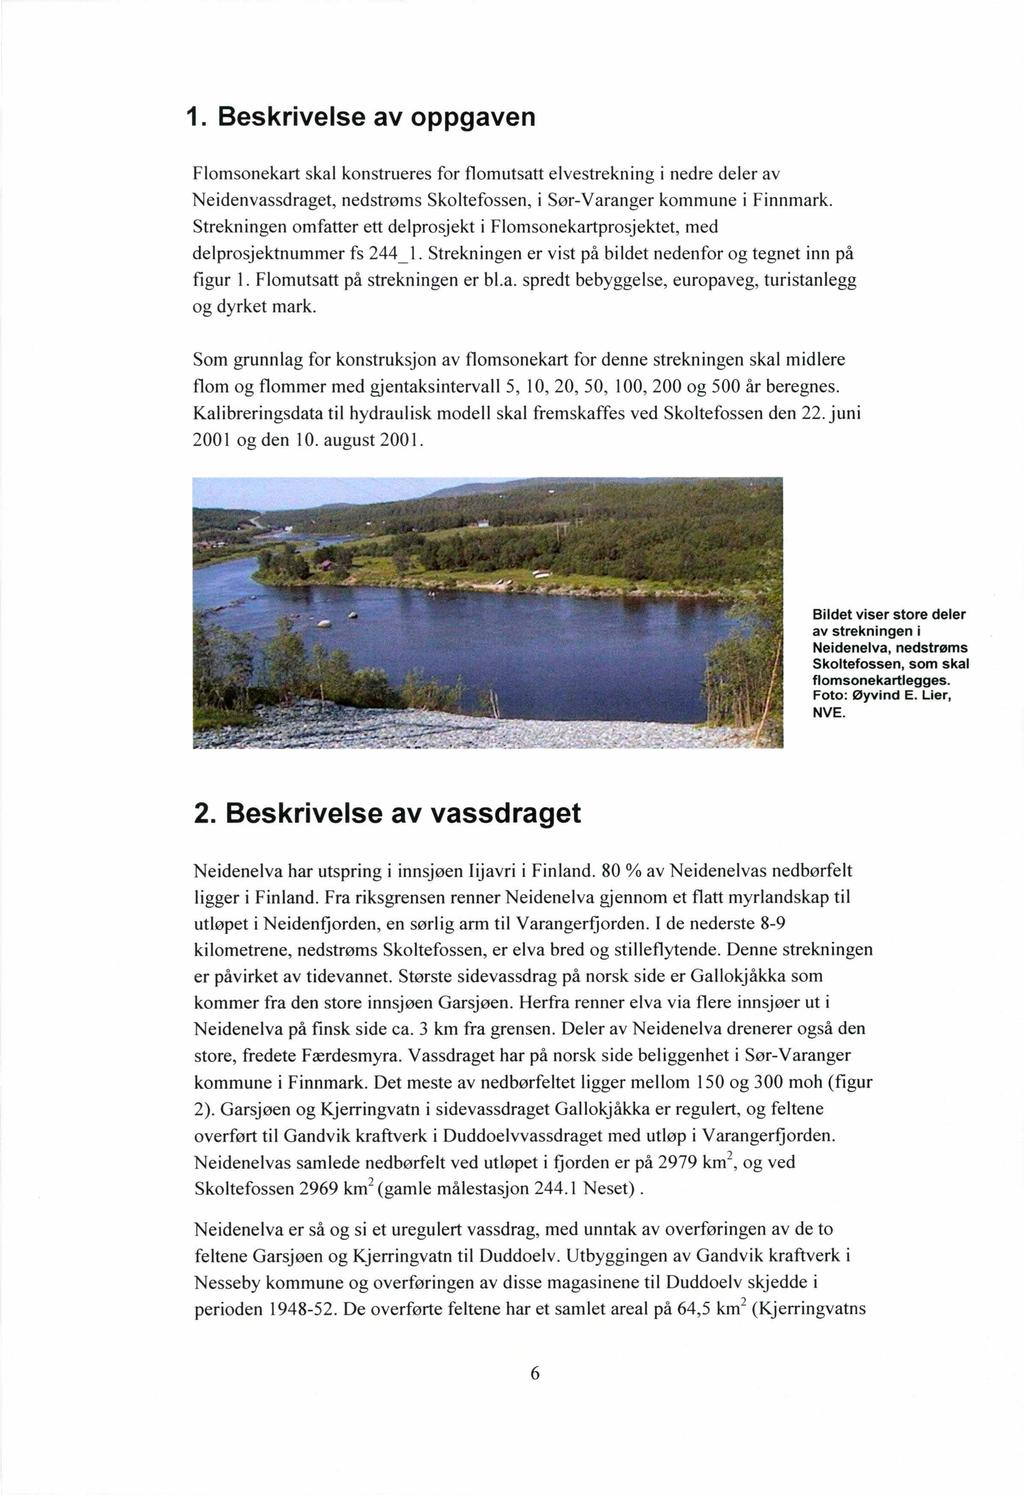 1. Beskrivelse av oppgaven Flomsonekart skal konstrueres for flomutsatt elvestrekning i nedre deler av Neidenvassdraget, nedstrøms Skoltefossen, i Sør-Varanger kommune i Finnmark.